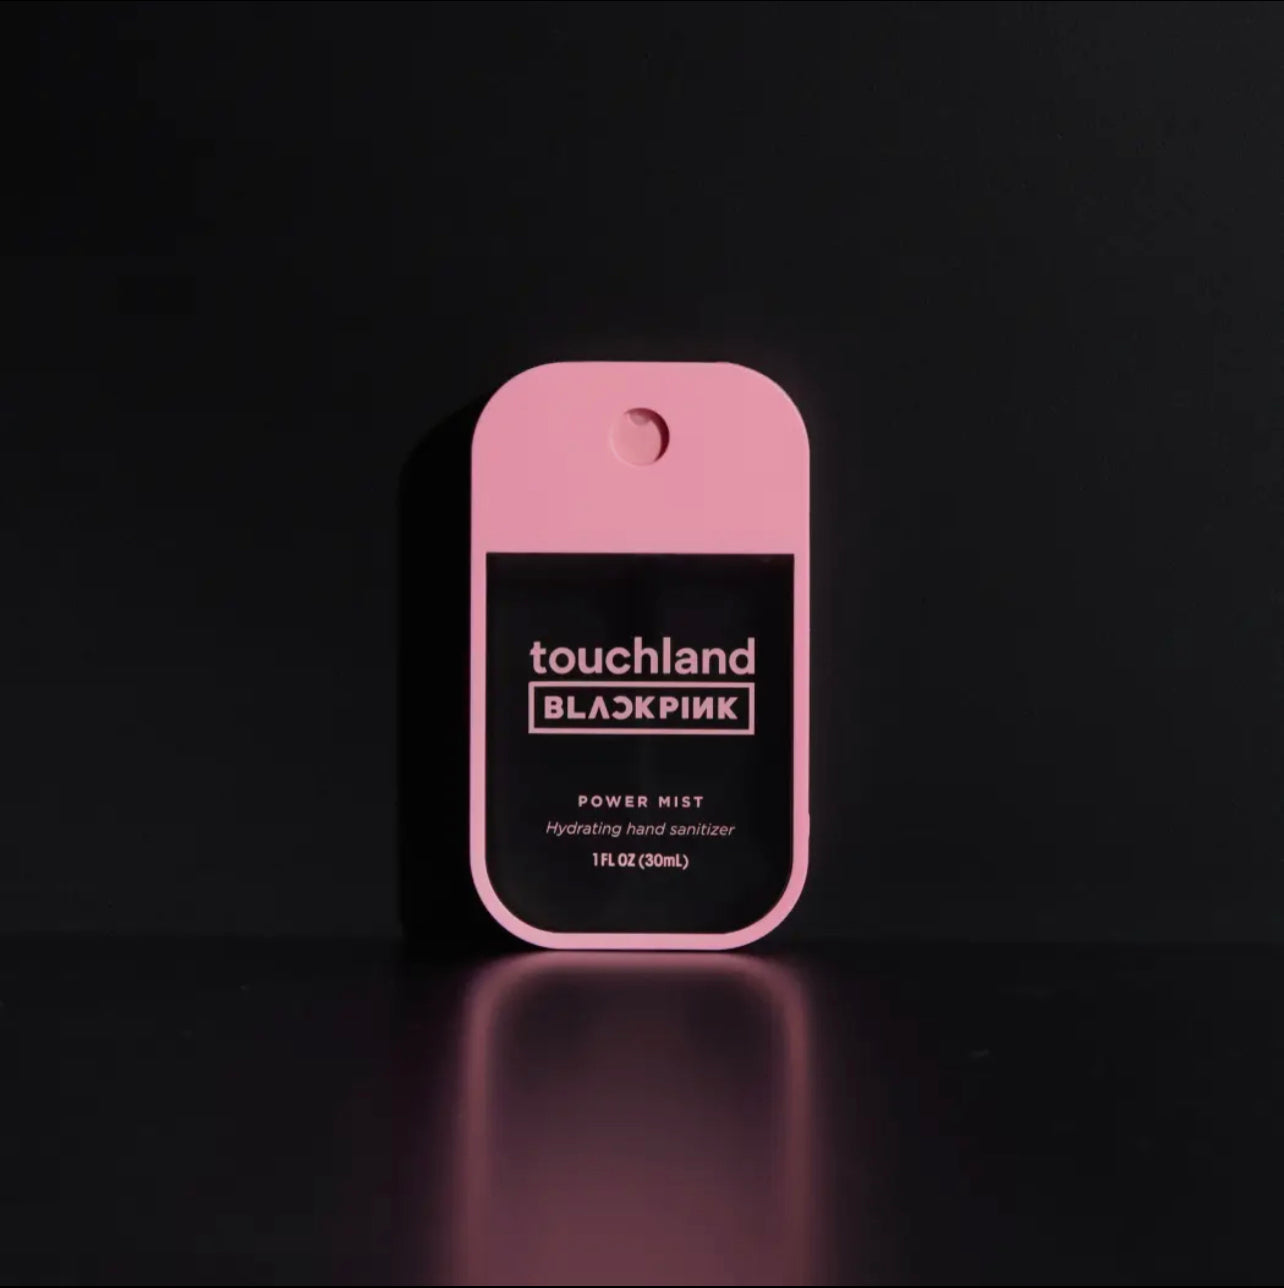 touchland power mist hand sanitizer